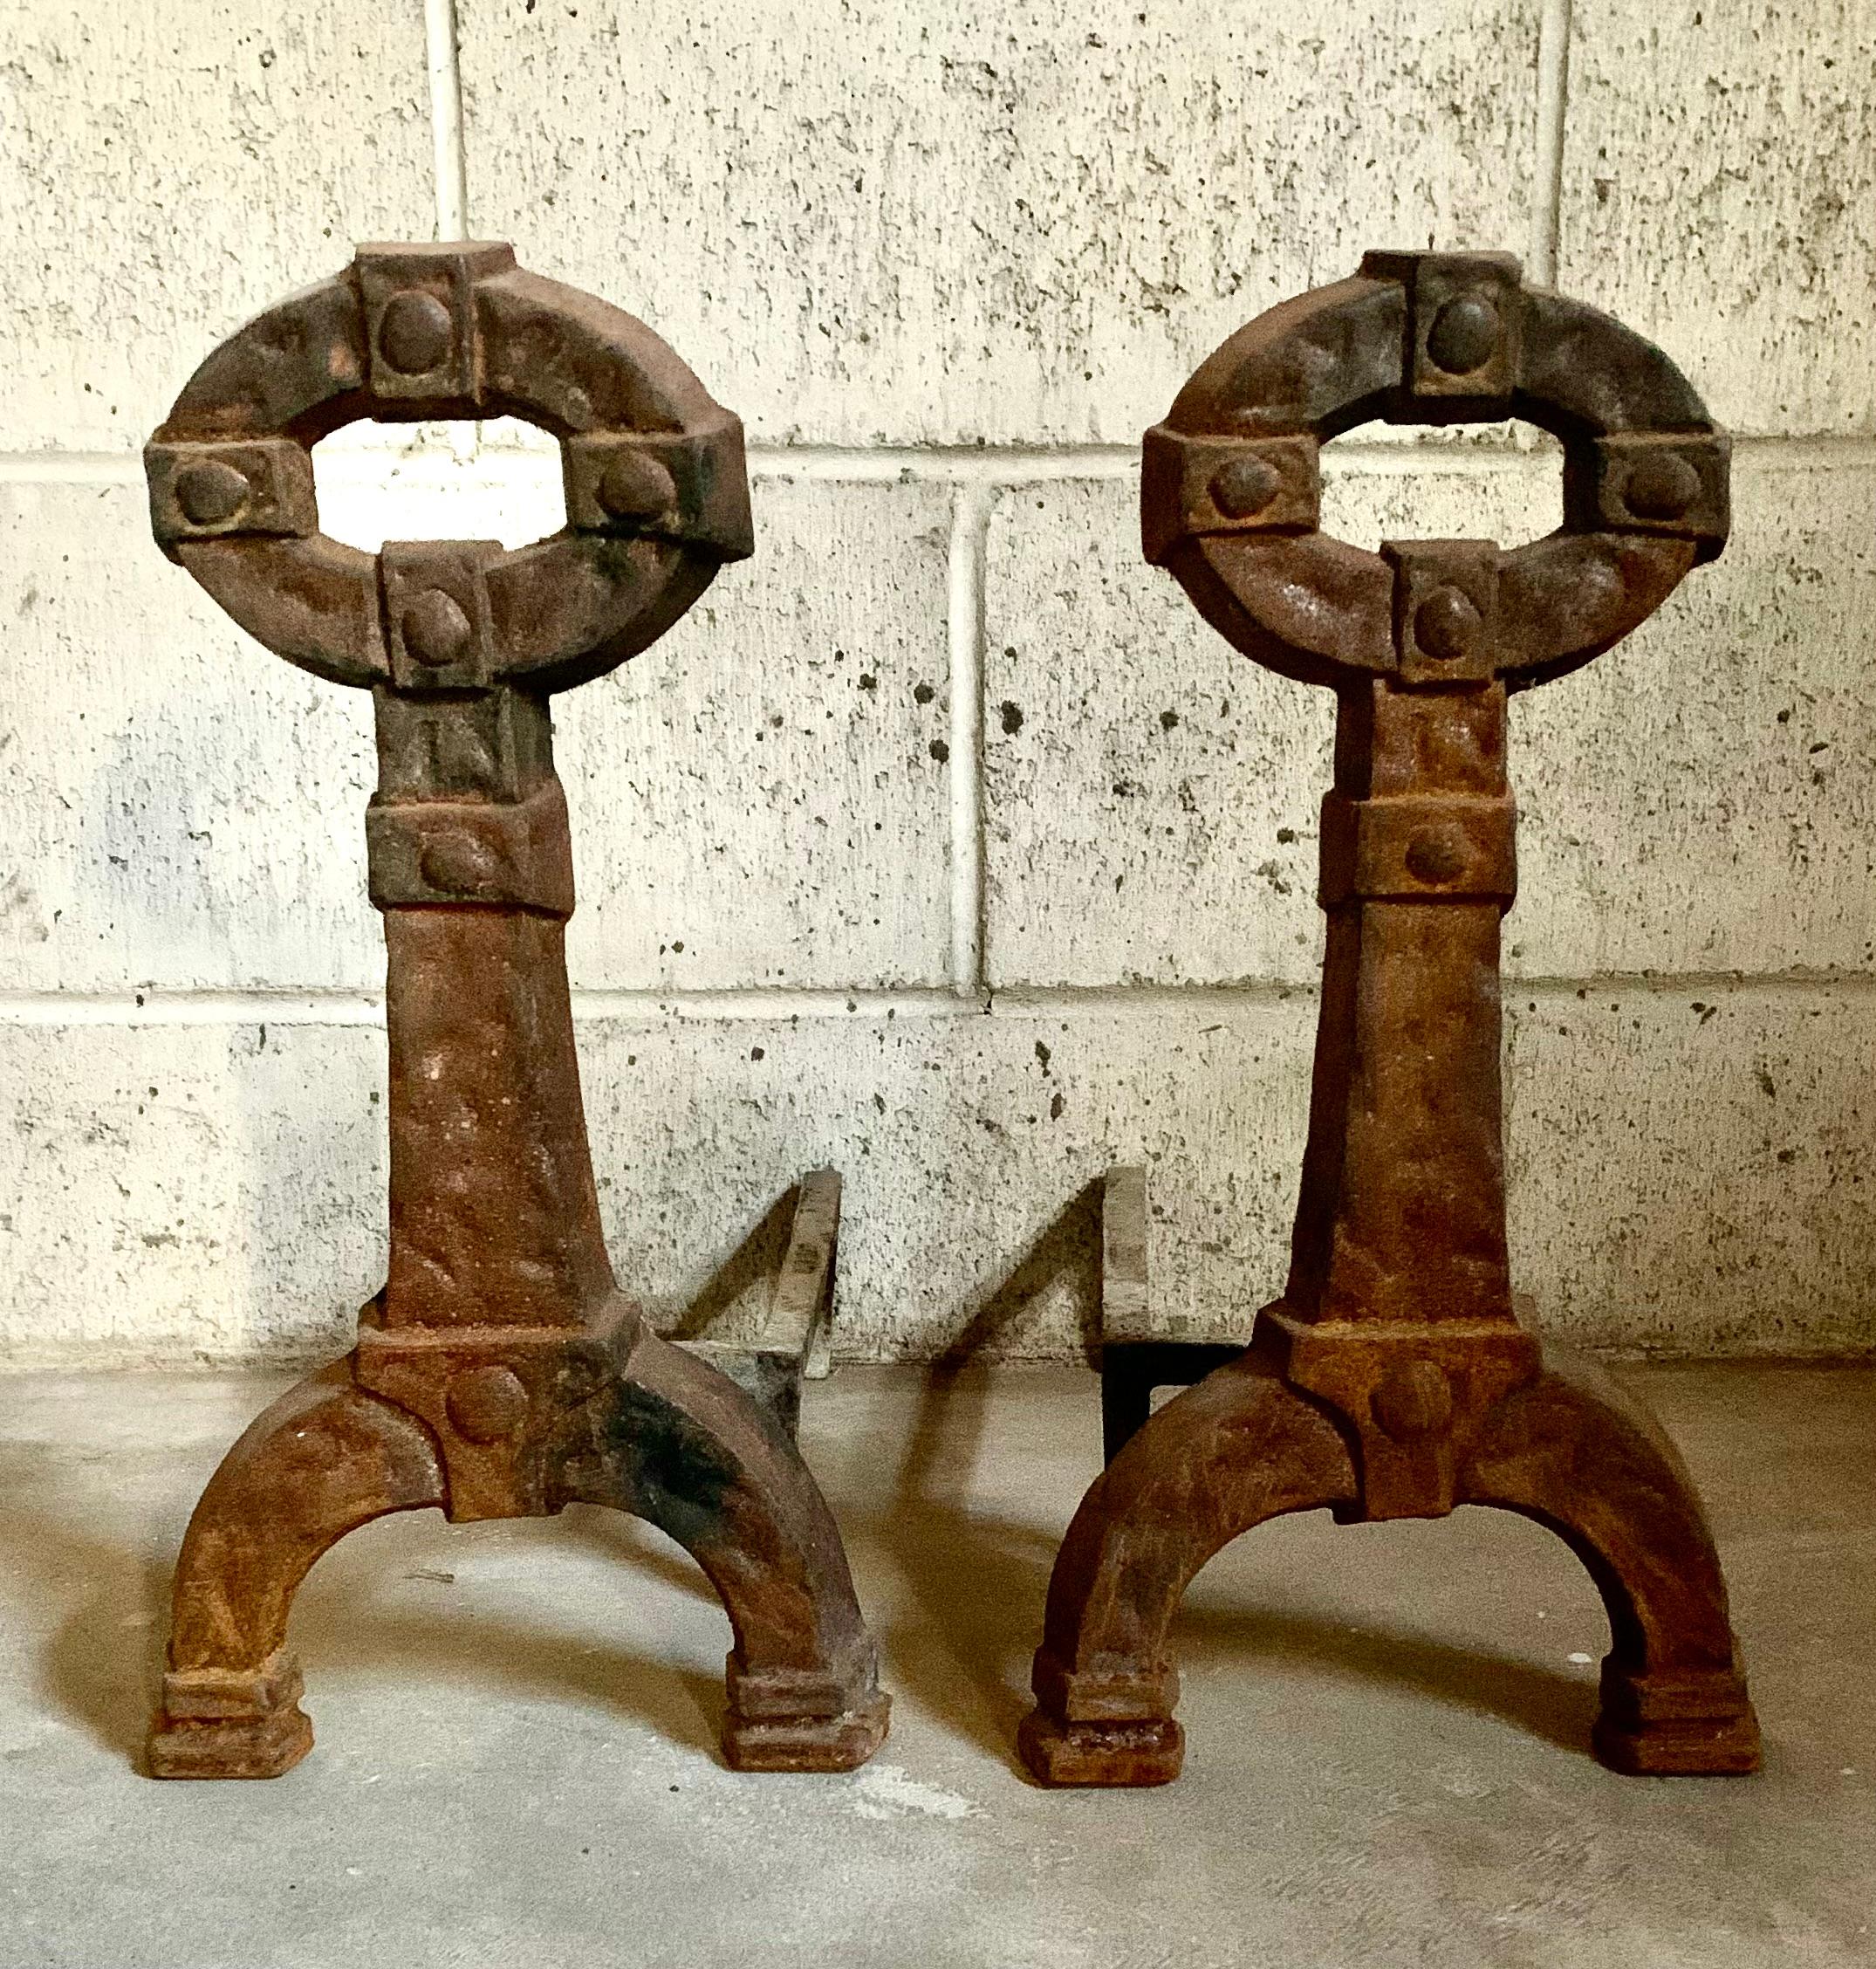 Paar gusseiserne Androns im Stil der Mission Arts and Crafts des frühen 20.
Schöne, reiche ursprüngliche Patina.
Zu den Proponenten der Missions-, Prärie-School- und Arts-and-Crafts-Bewegungen in den Vereinigten Staaten gehörten Frank Lloyd Wright,